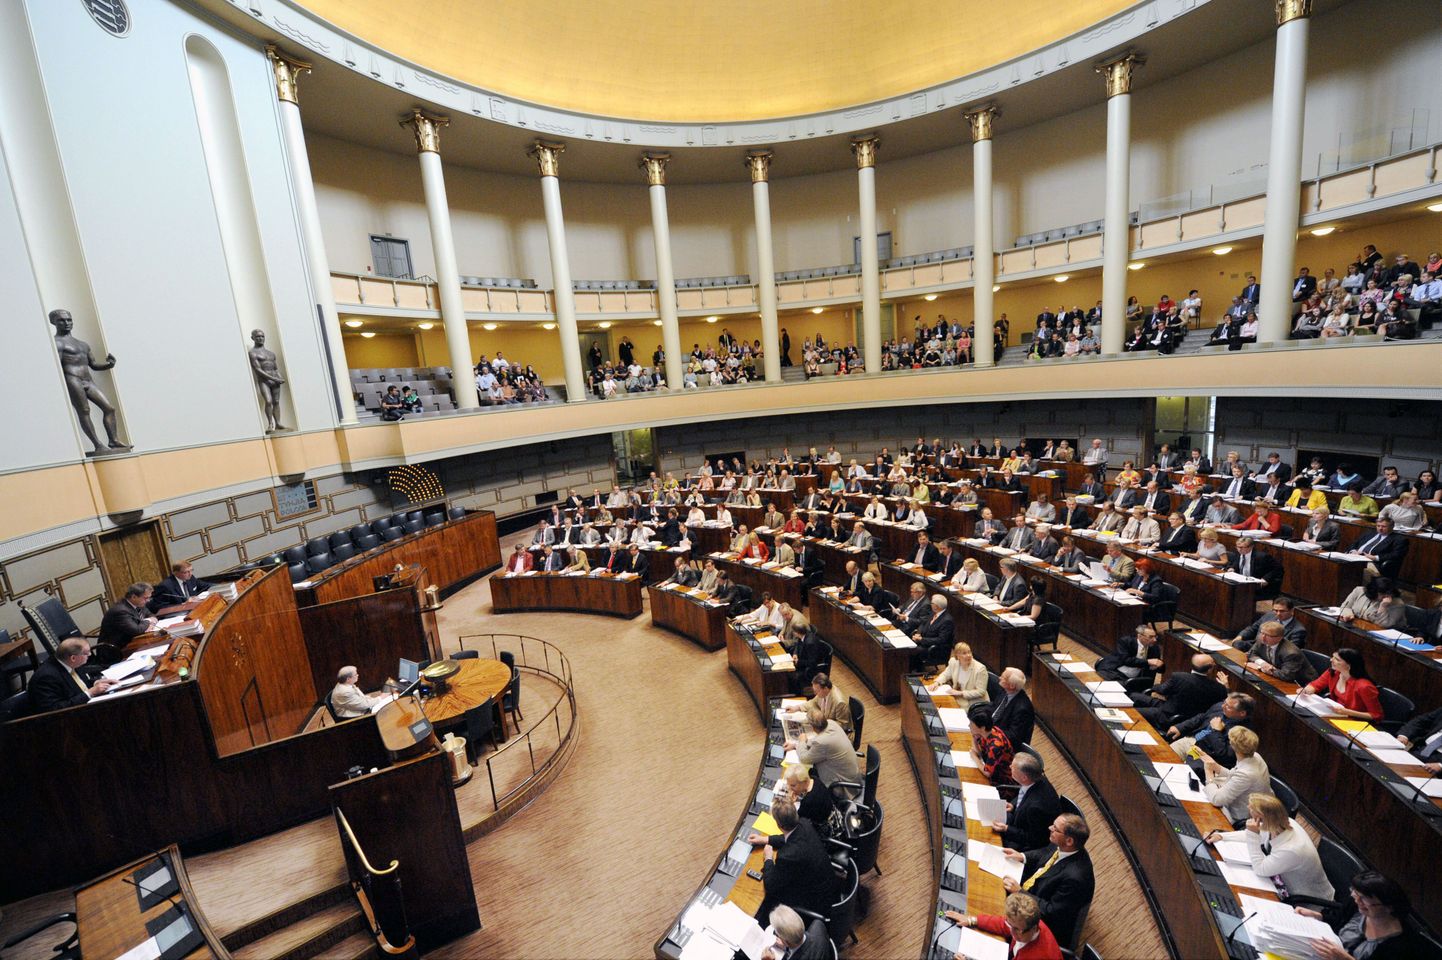 Vaade Soome parlamendi istungitesaali.